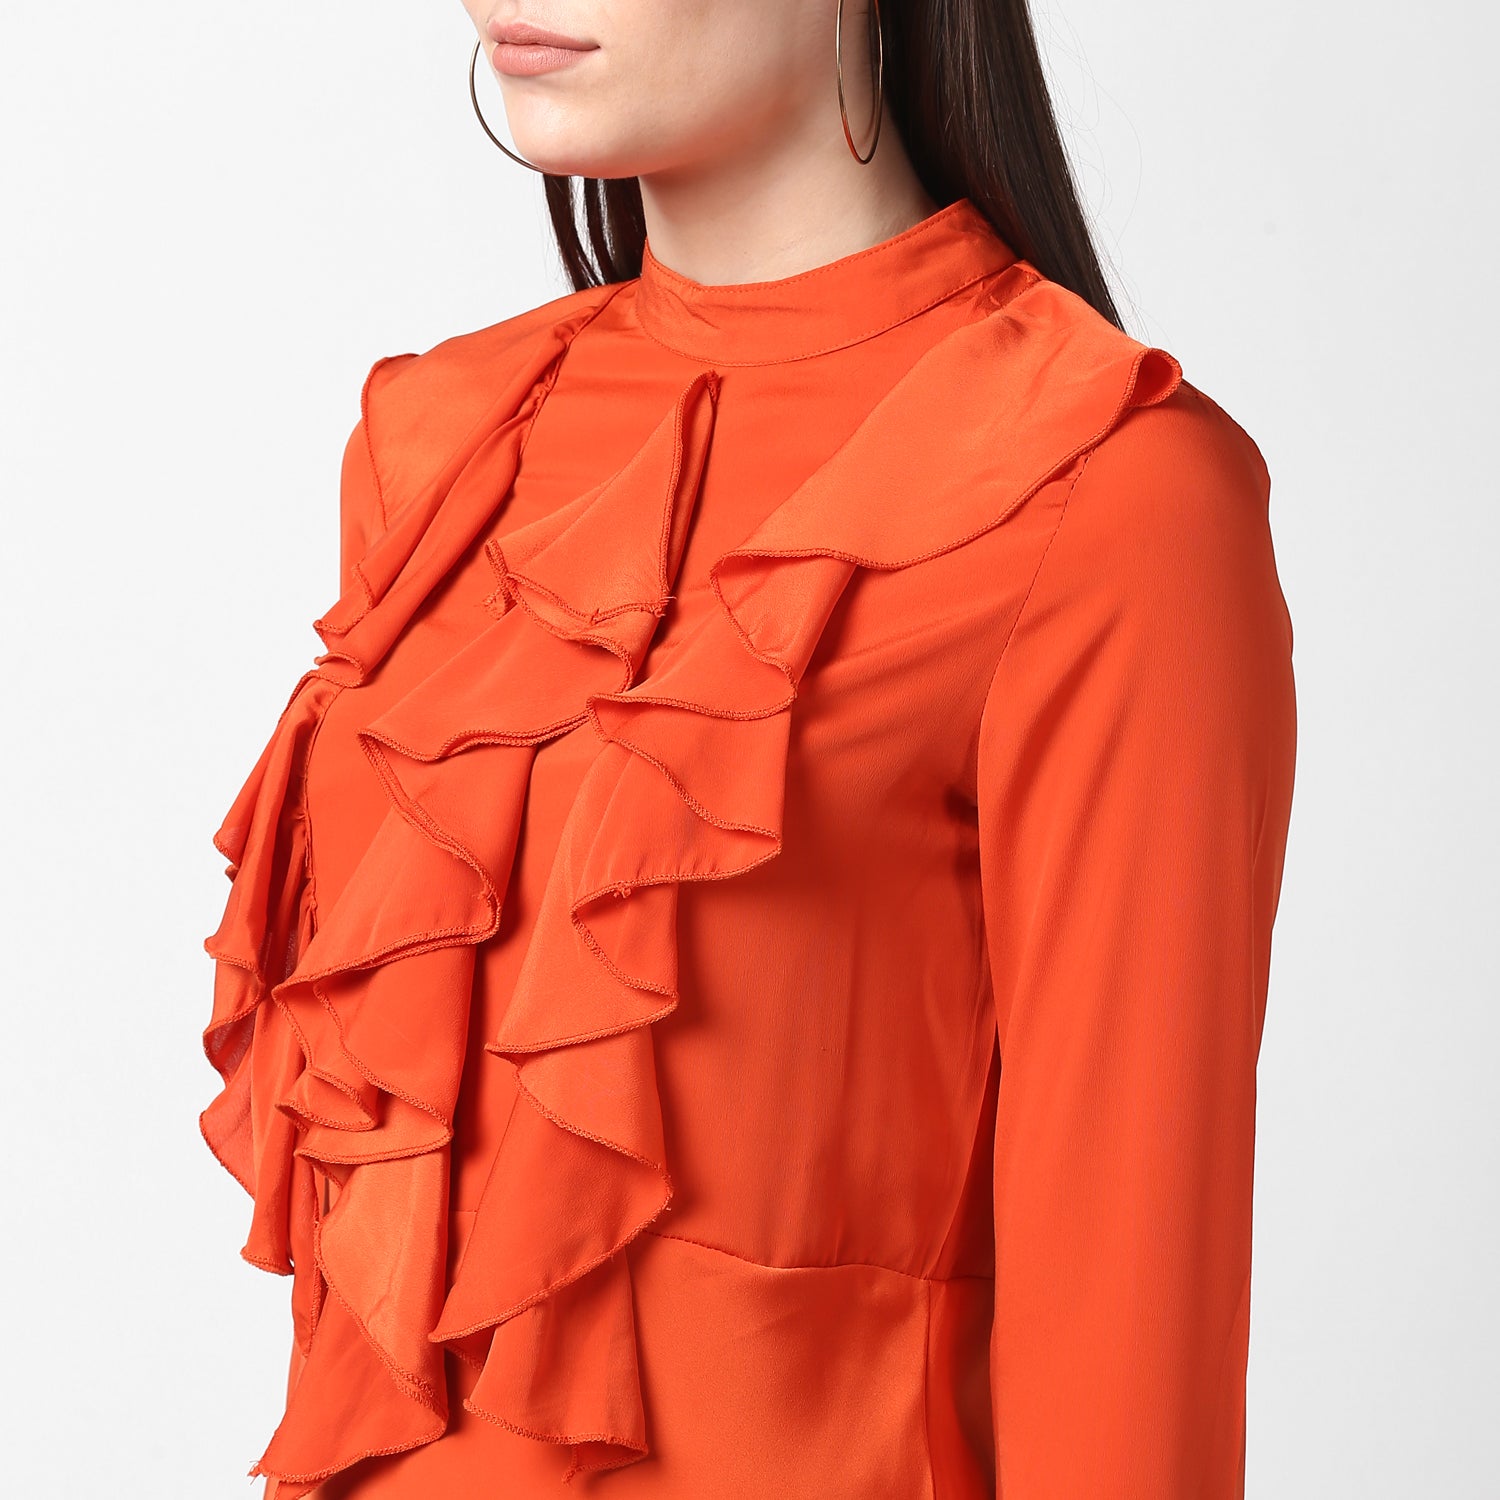 Women's Orange Front Ruffle Bell Sleeve Dress - StyleStone